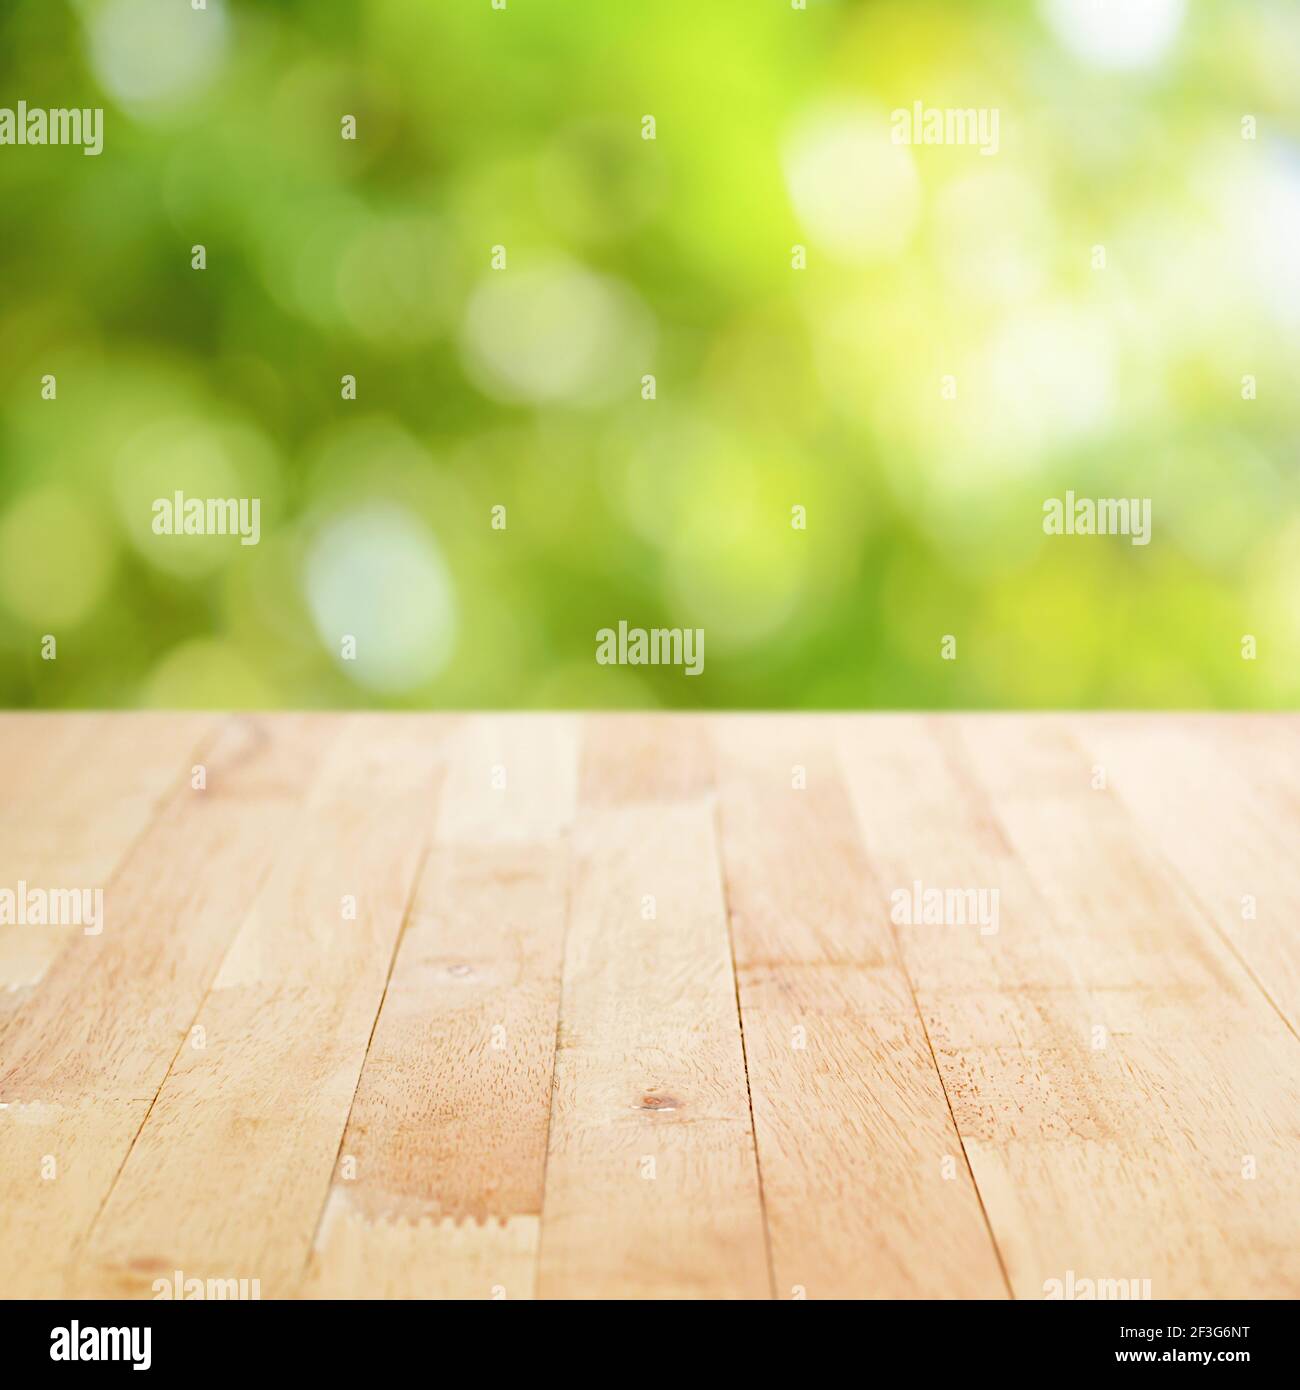 Holztischplatte auf grünem Bokeh abstrakter Hintergrund - Dose Für die Montage oder Anzeige Ihrer Produkte verwendet werden Stockfoto